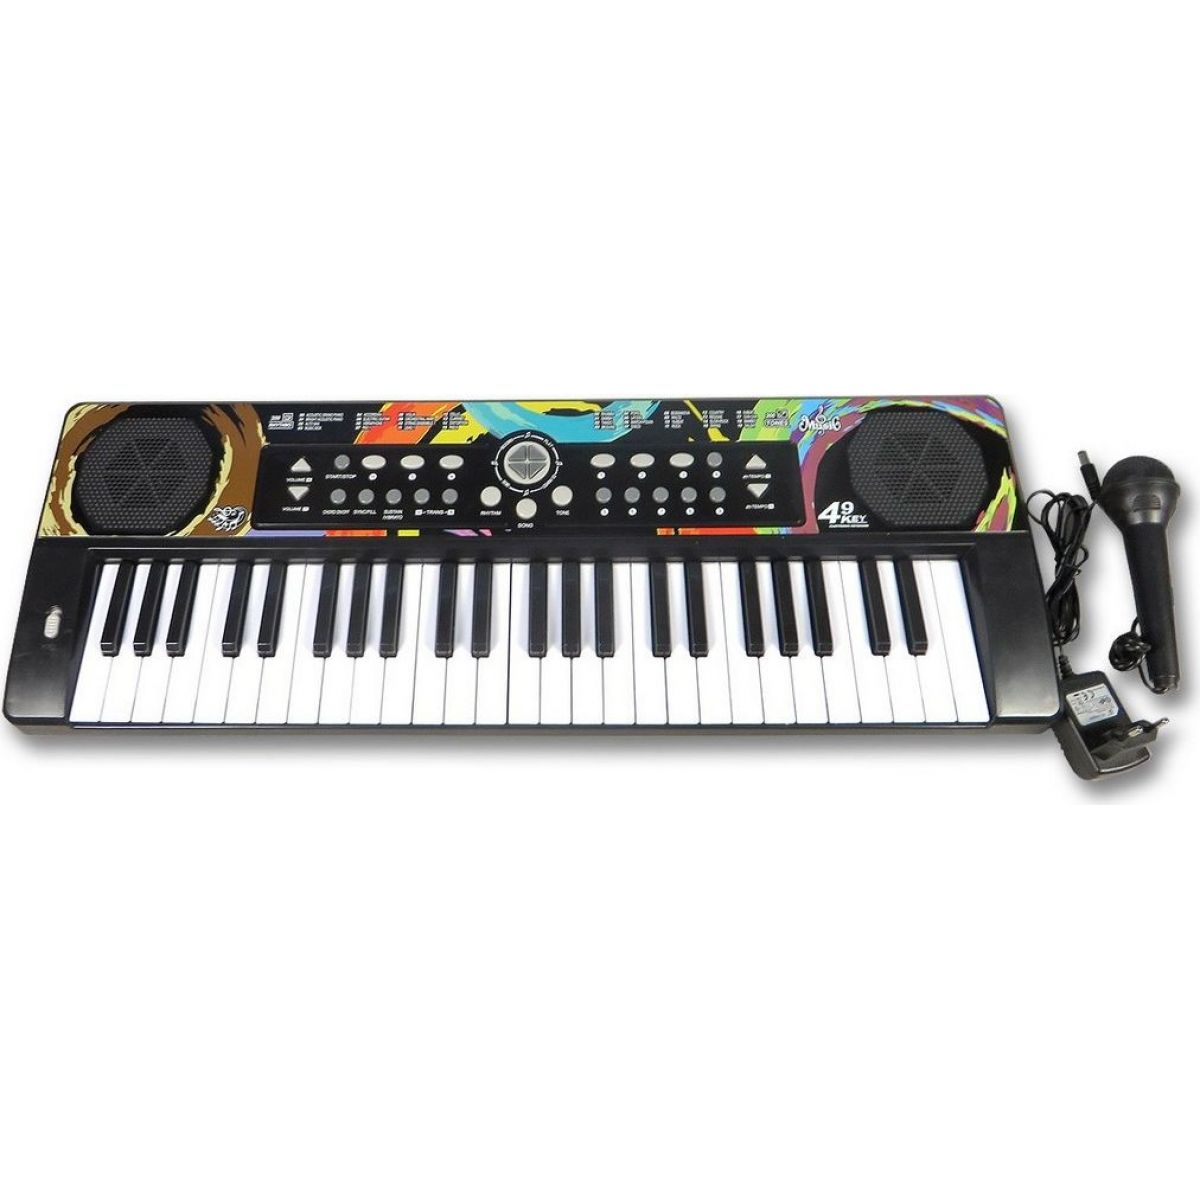 Made Piano 49 kláves s nabíječkou a mikrofonem